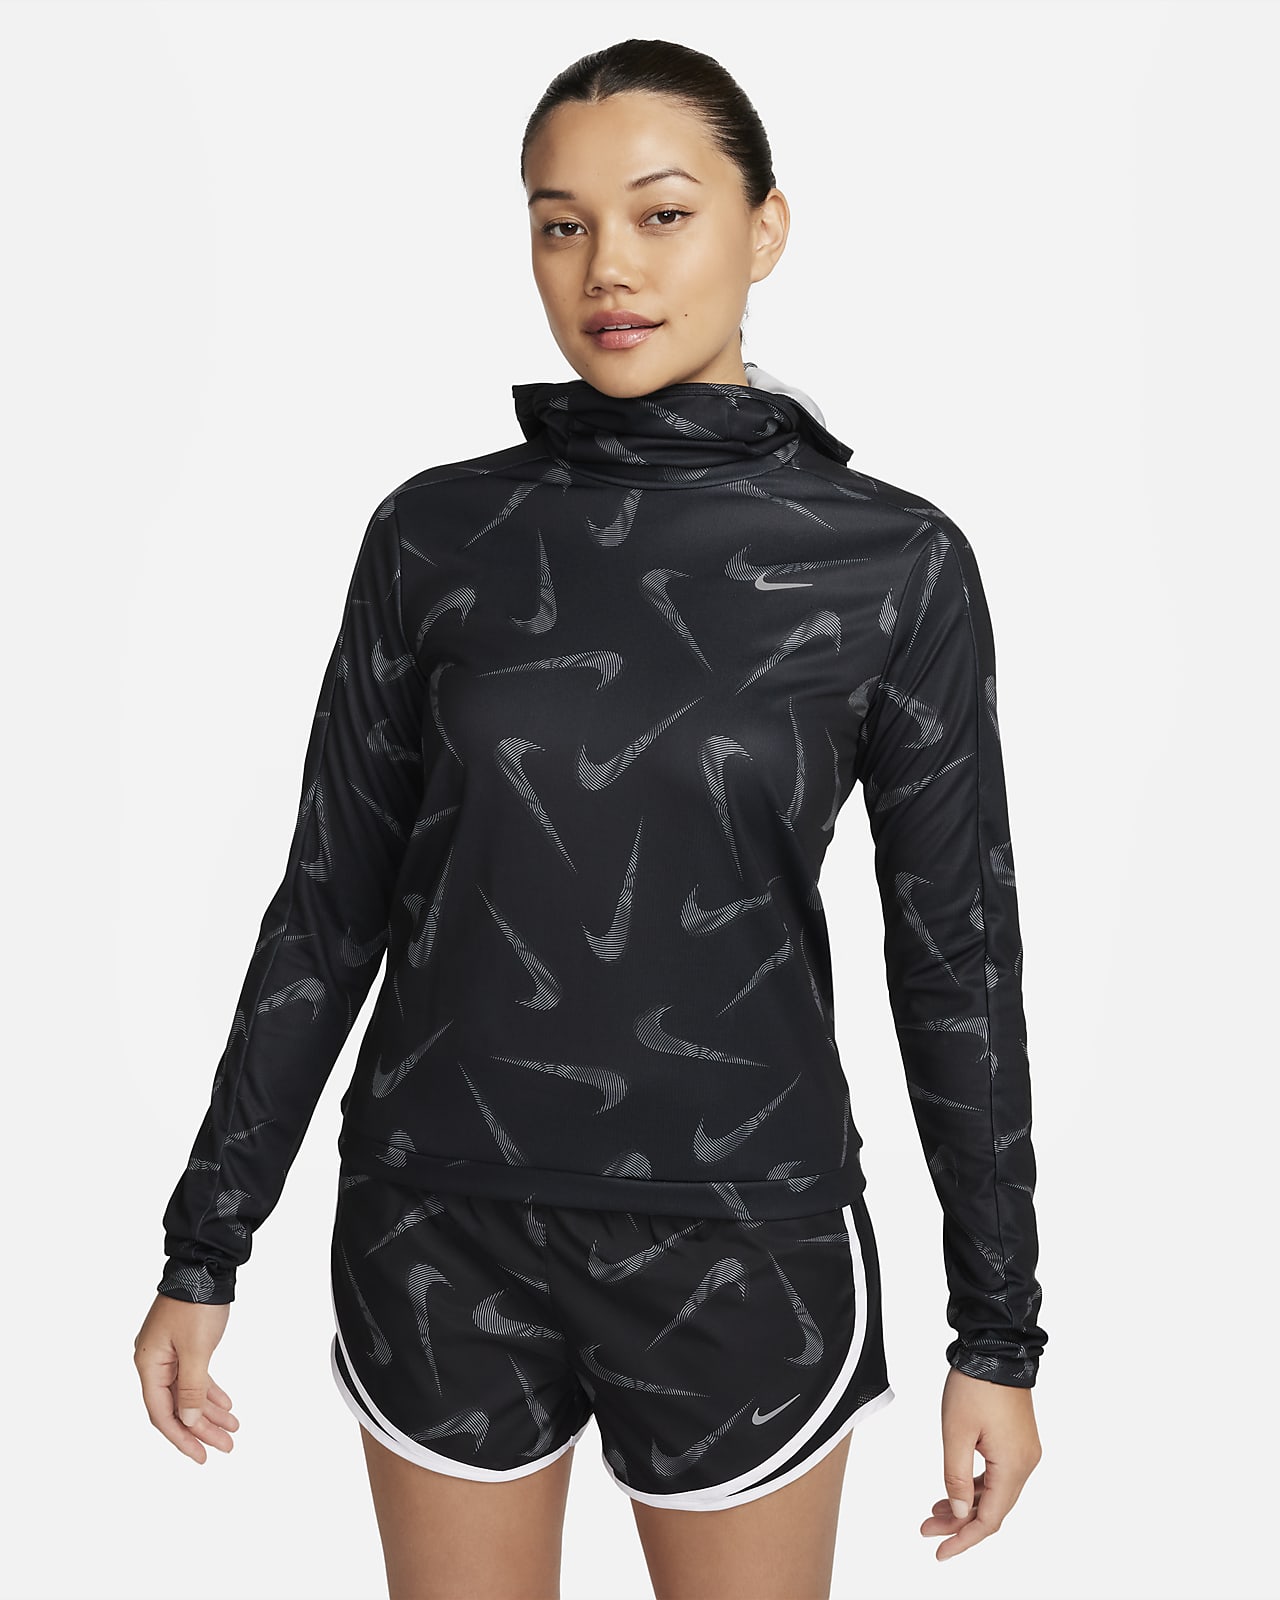 Veste de running imprimée à capuche Nike Swoosh pour femme